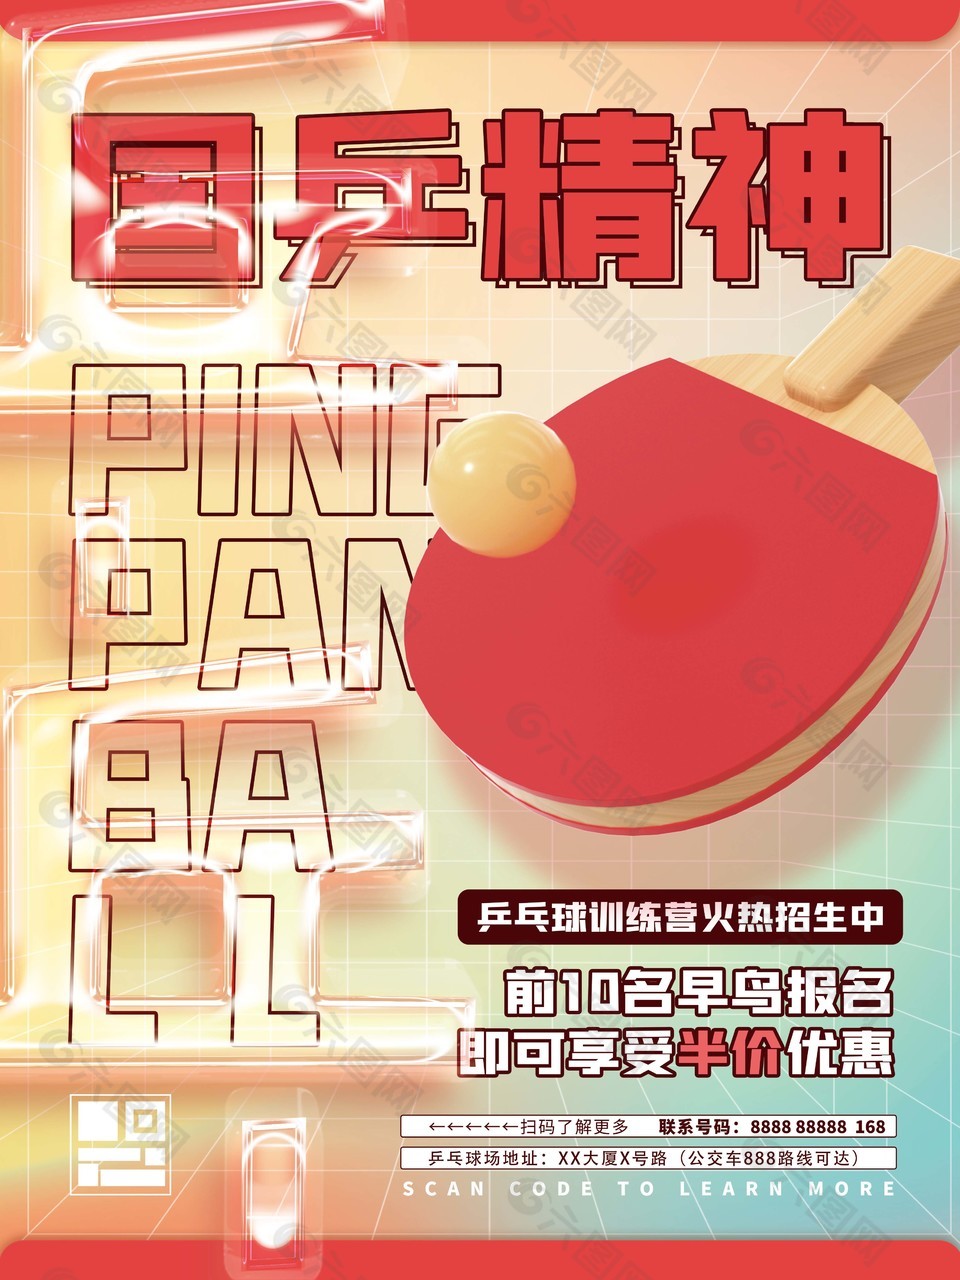 乒乓球训练营招生宣传海报素材